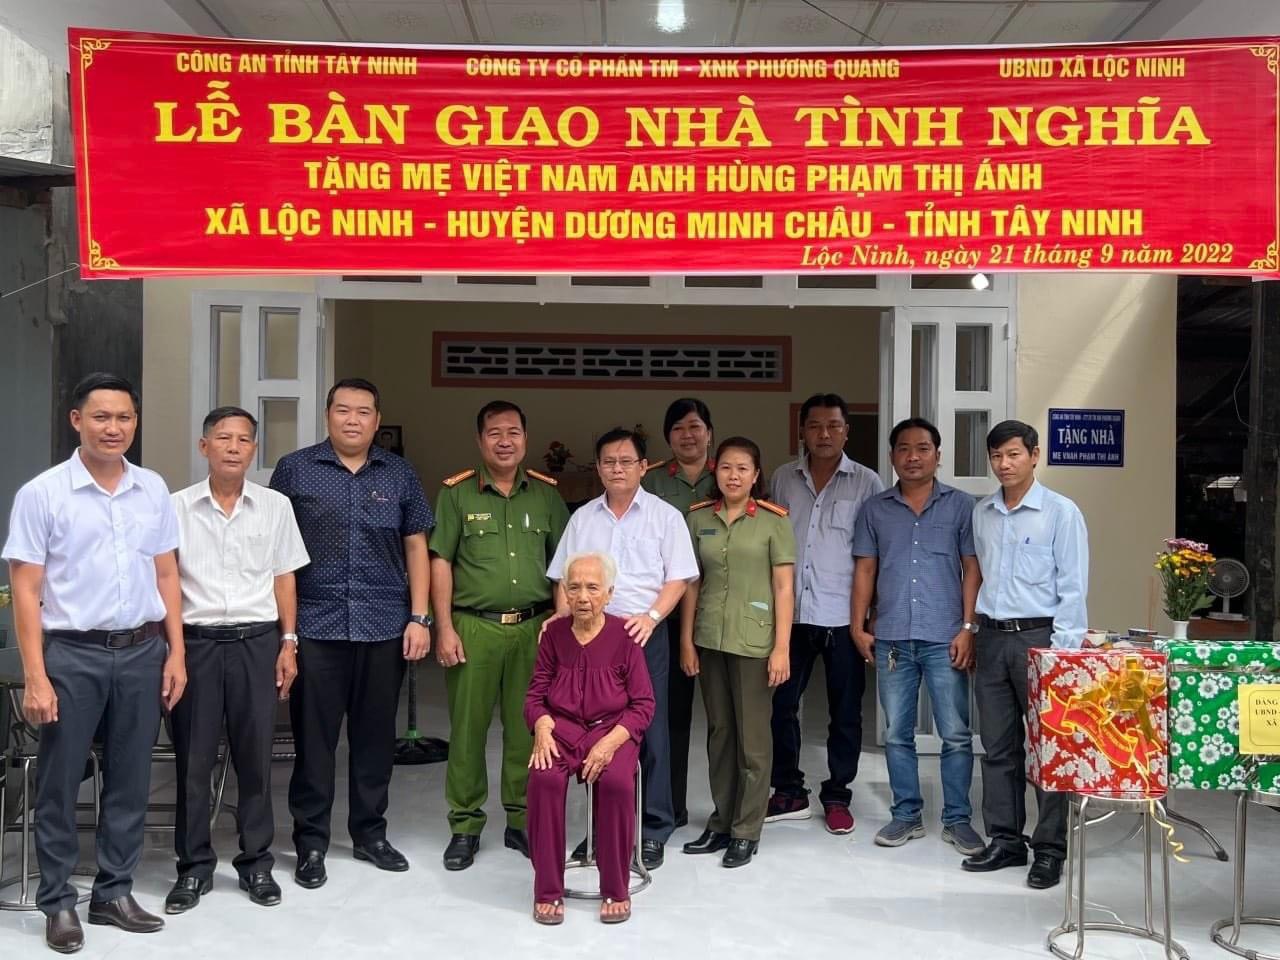 MTTQ Xã Lộc Ninh  tổ chức Lễ trao tặng nhà mẹ VNAH Phạm Thị Ánh